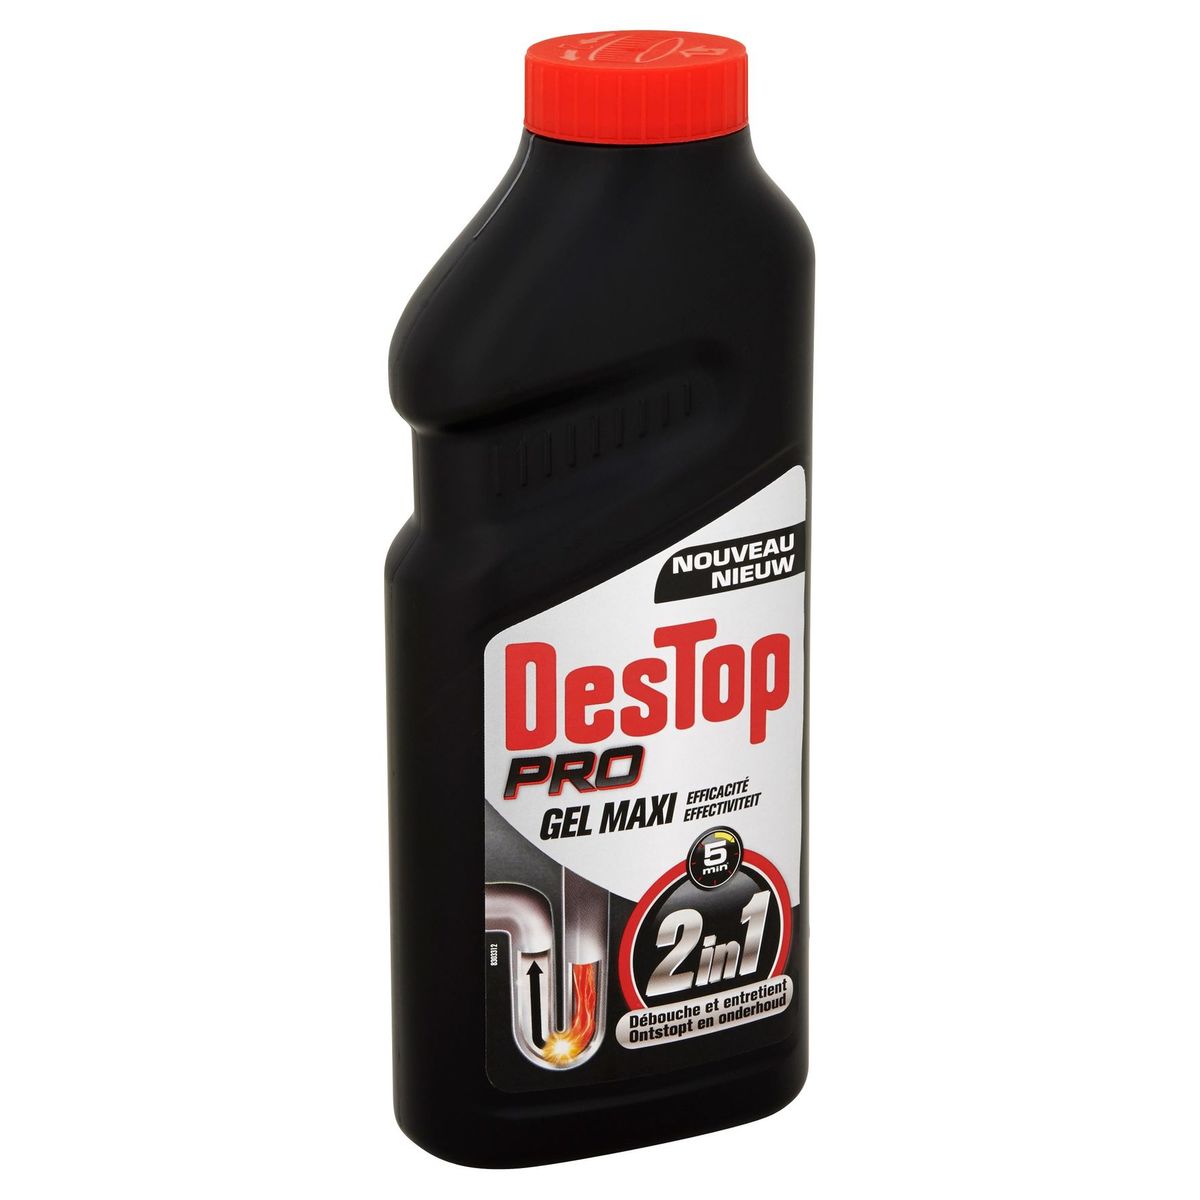 Destop Pro Maxi 2in1 Gel Ontstopt en Onderhoud 500 ml